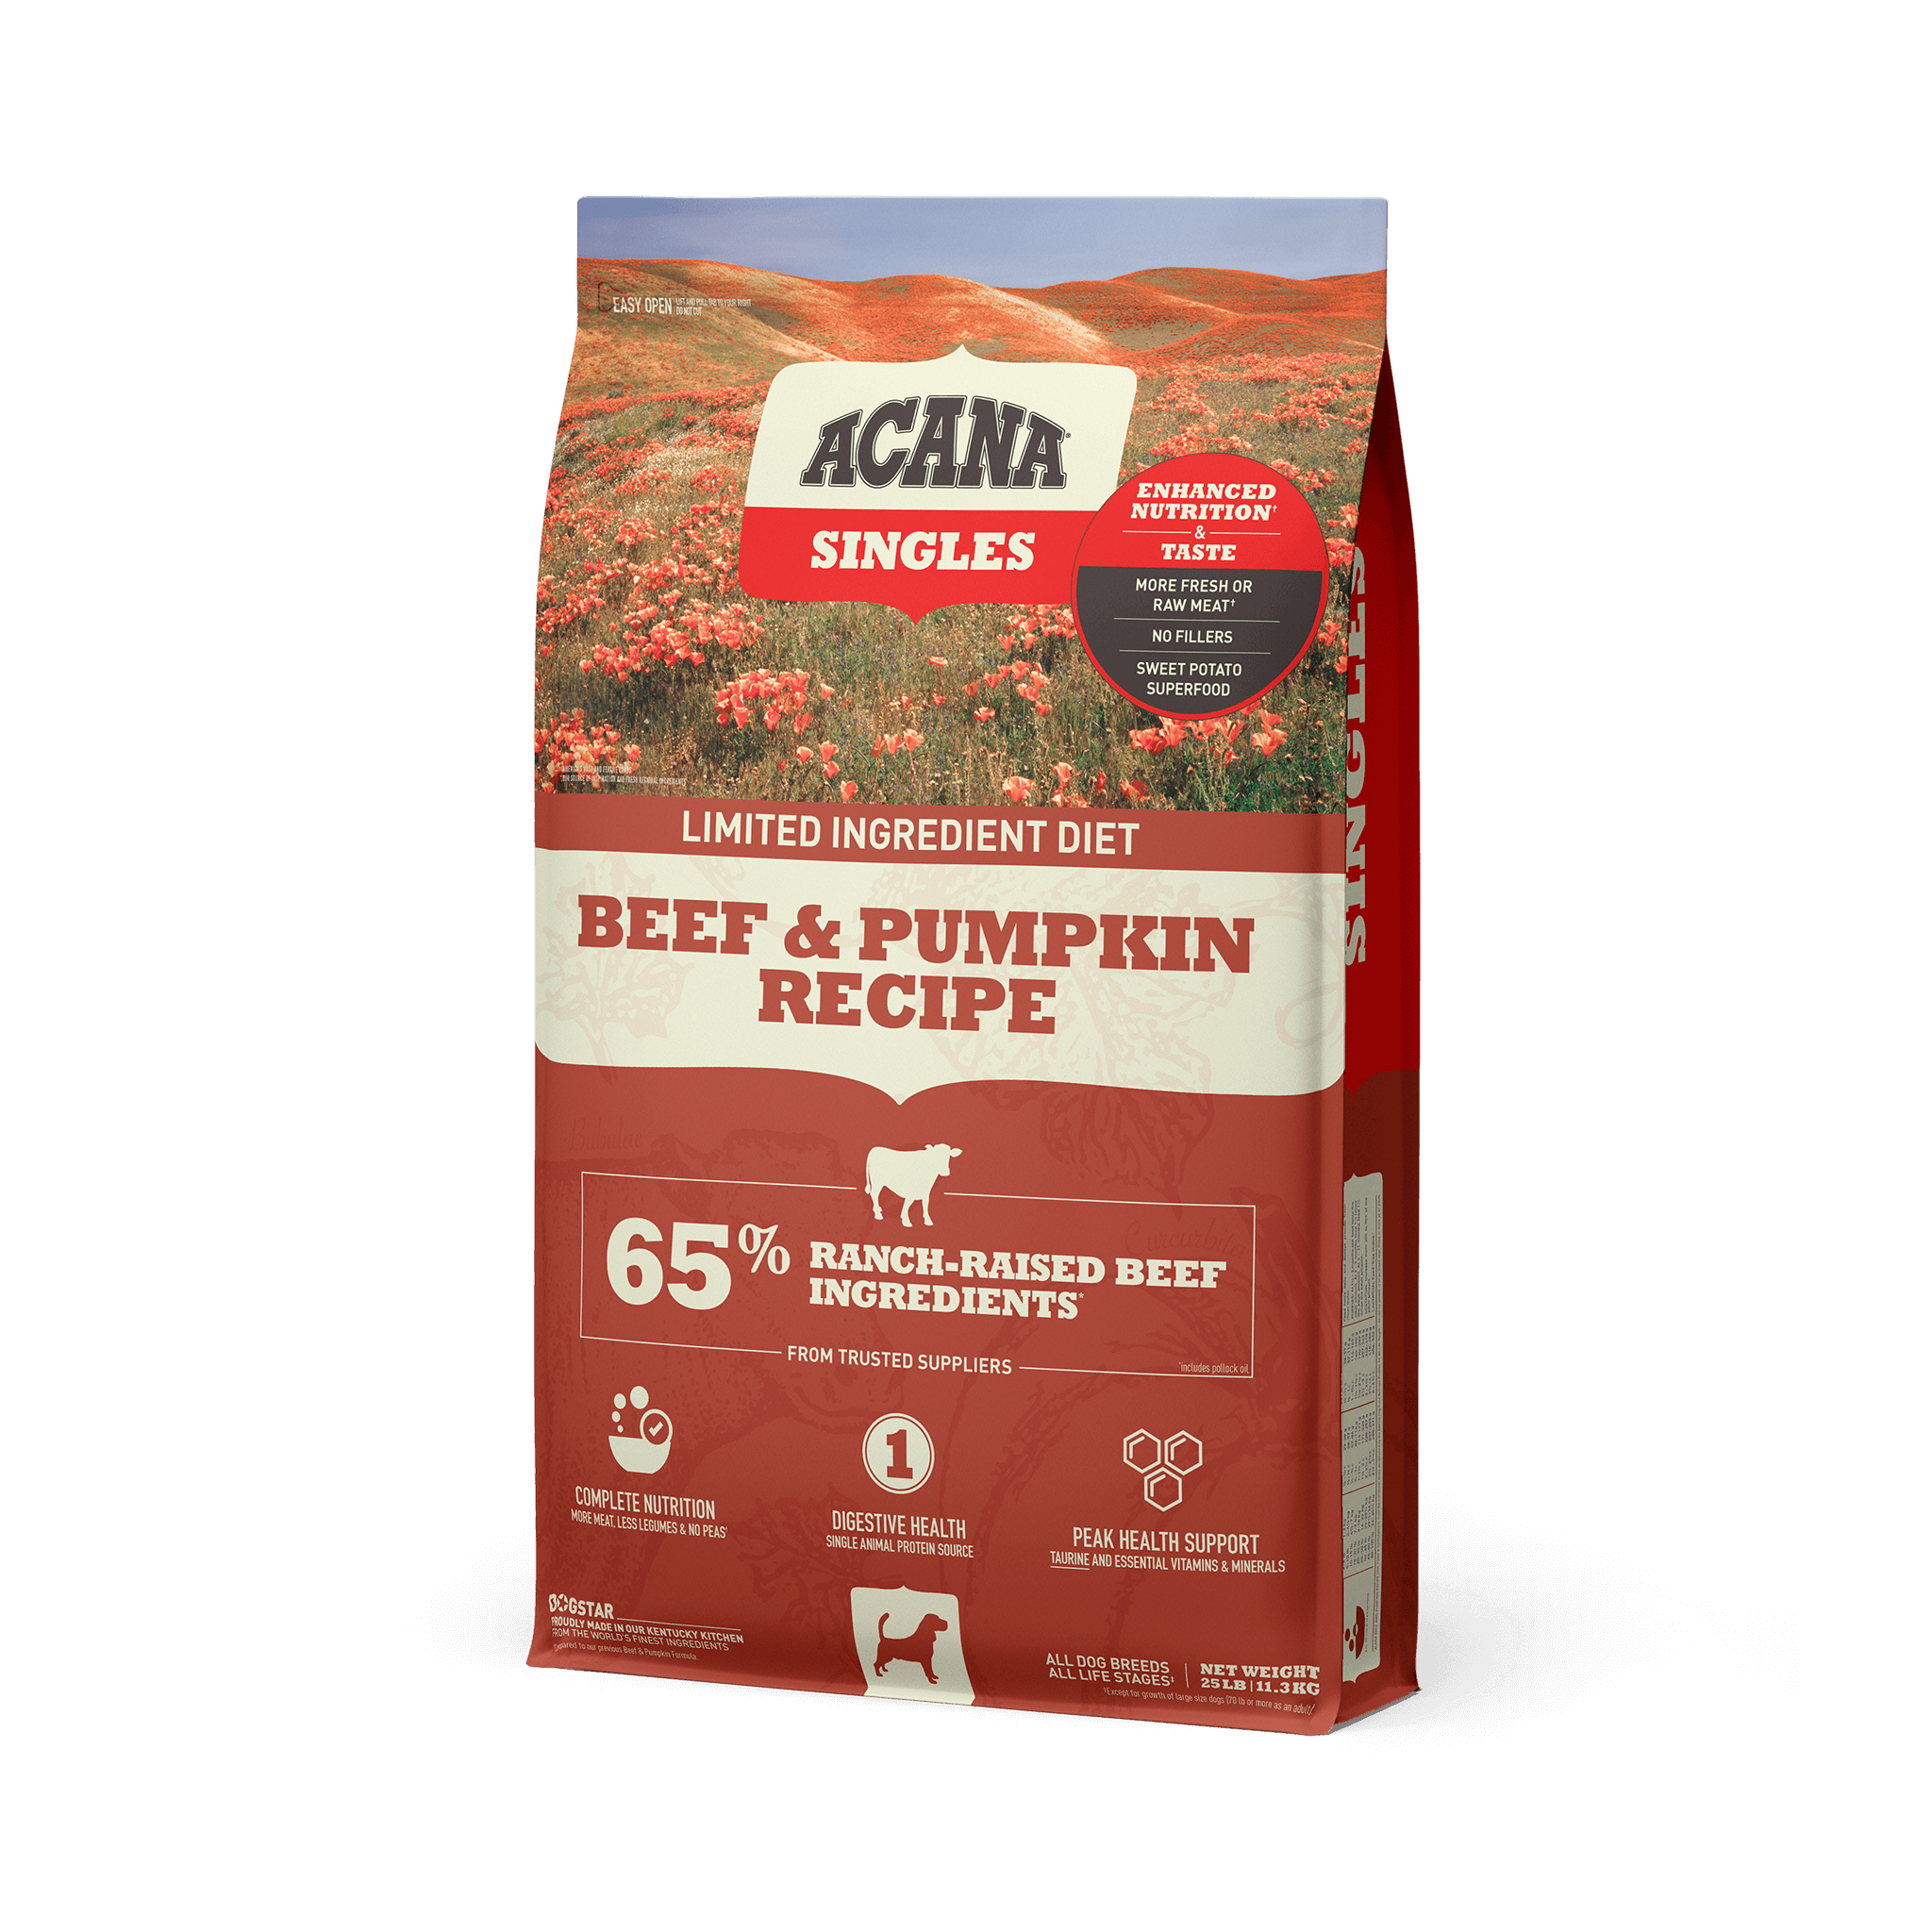 ACANA Dog Food - Singles Beef & Pumpkin